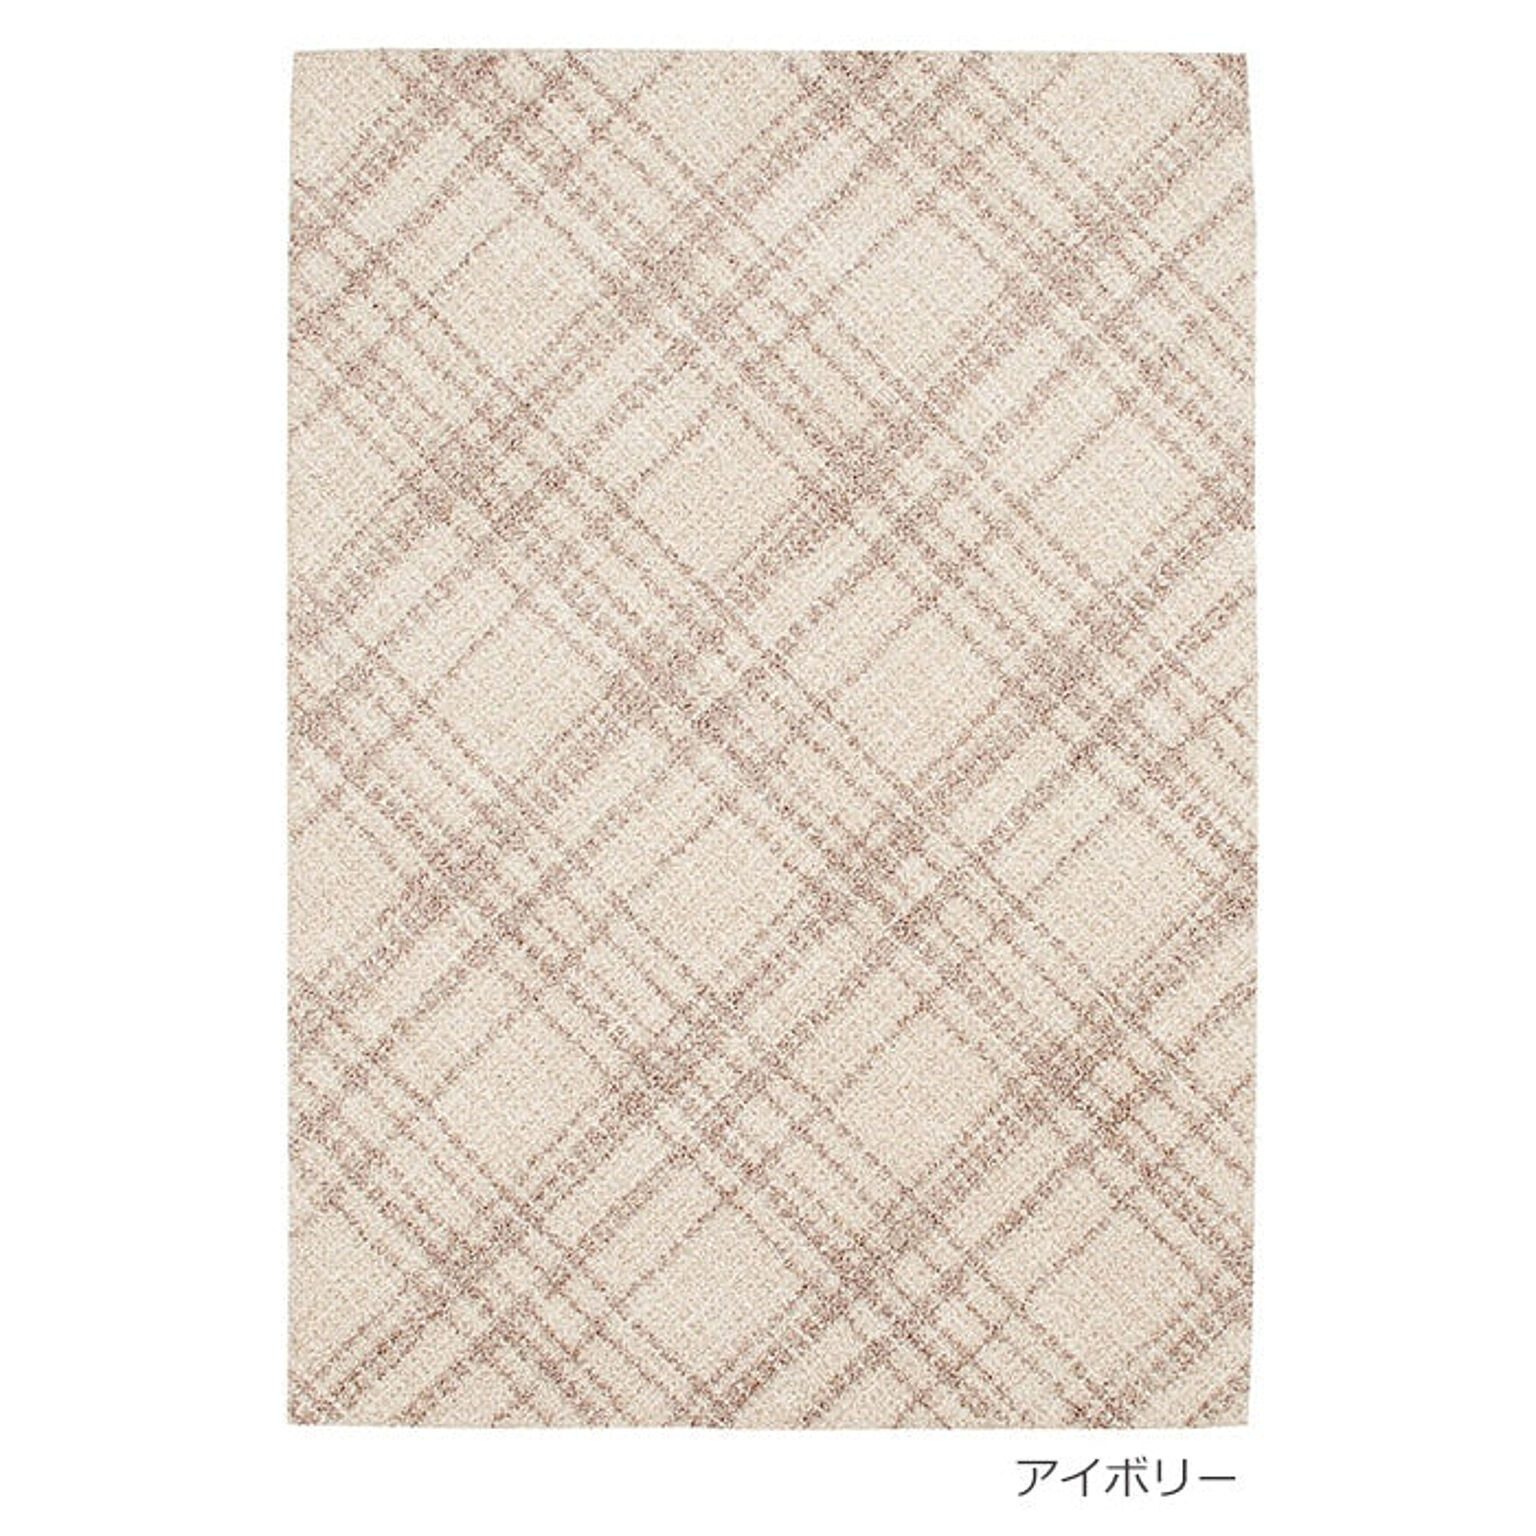 ラグ ラグマット 絨毯 日本製 カーペット Prevell プレーベル オドレイ 約140×200cm チェック柄 北欧 デザイン ナイロン 格子柄 チェック柄 引っ越し 新生活